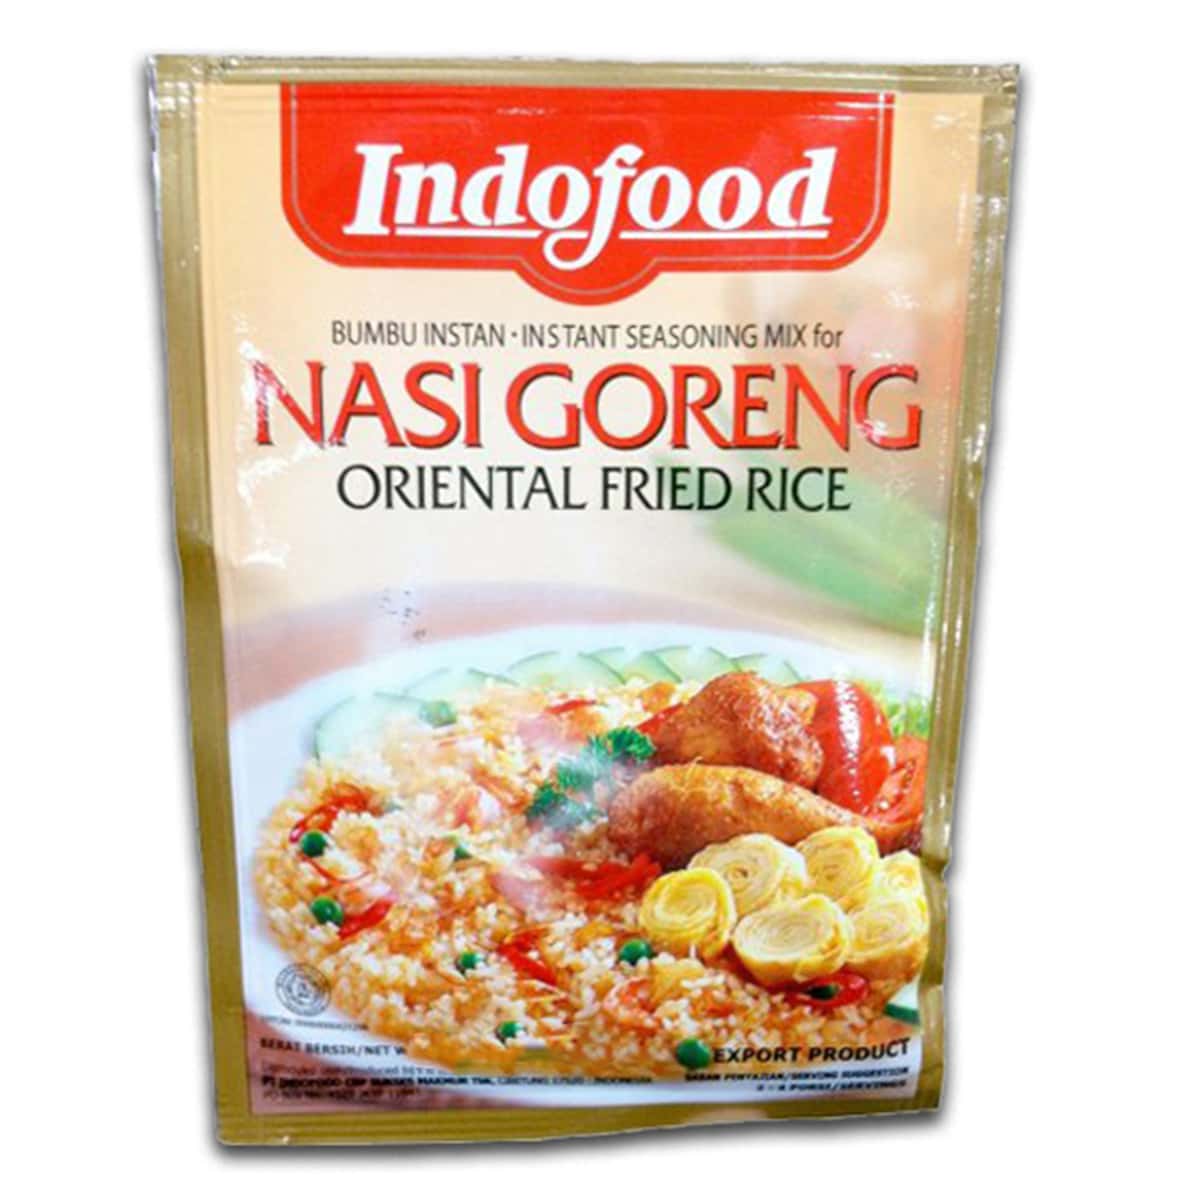 Buy Indofood Nasi Goreng (Oriental Fried Rice) - 45 gm